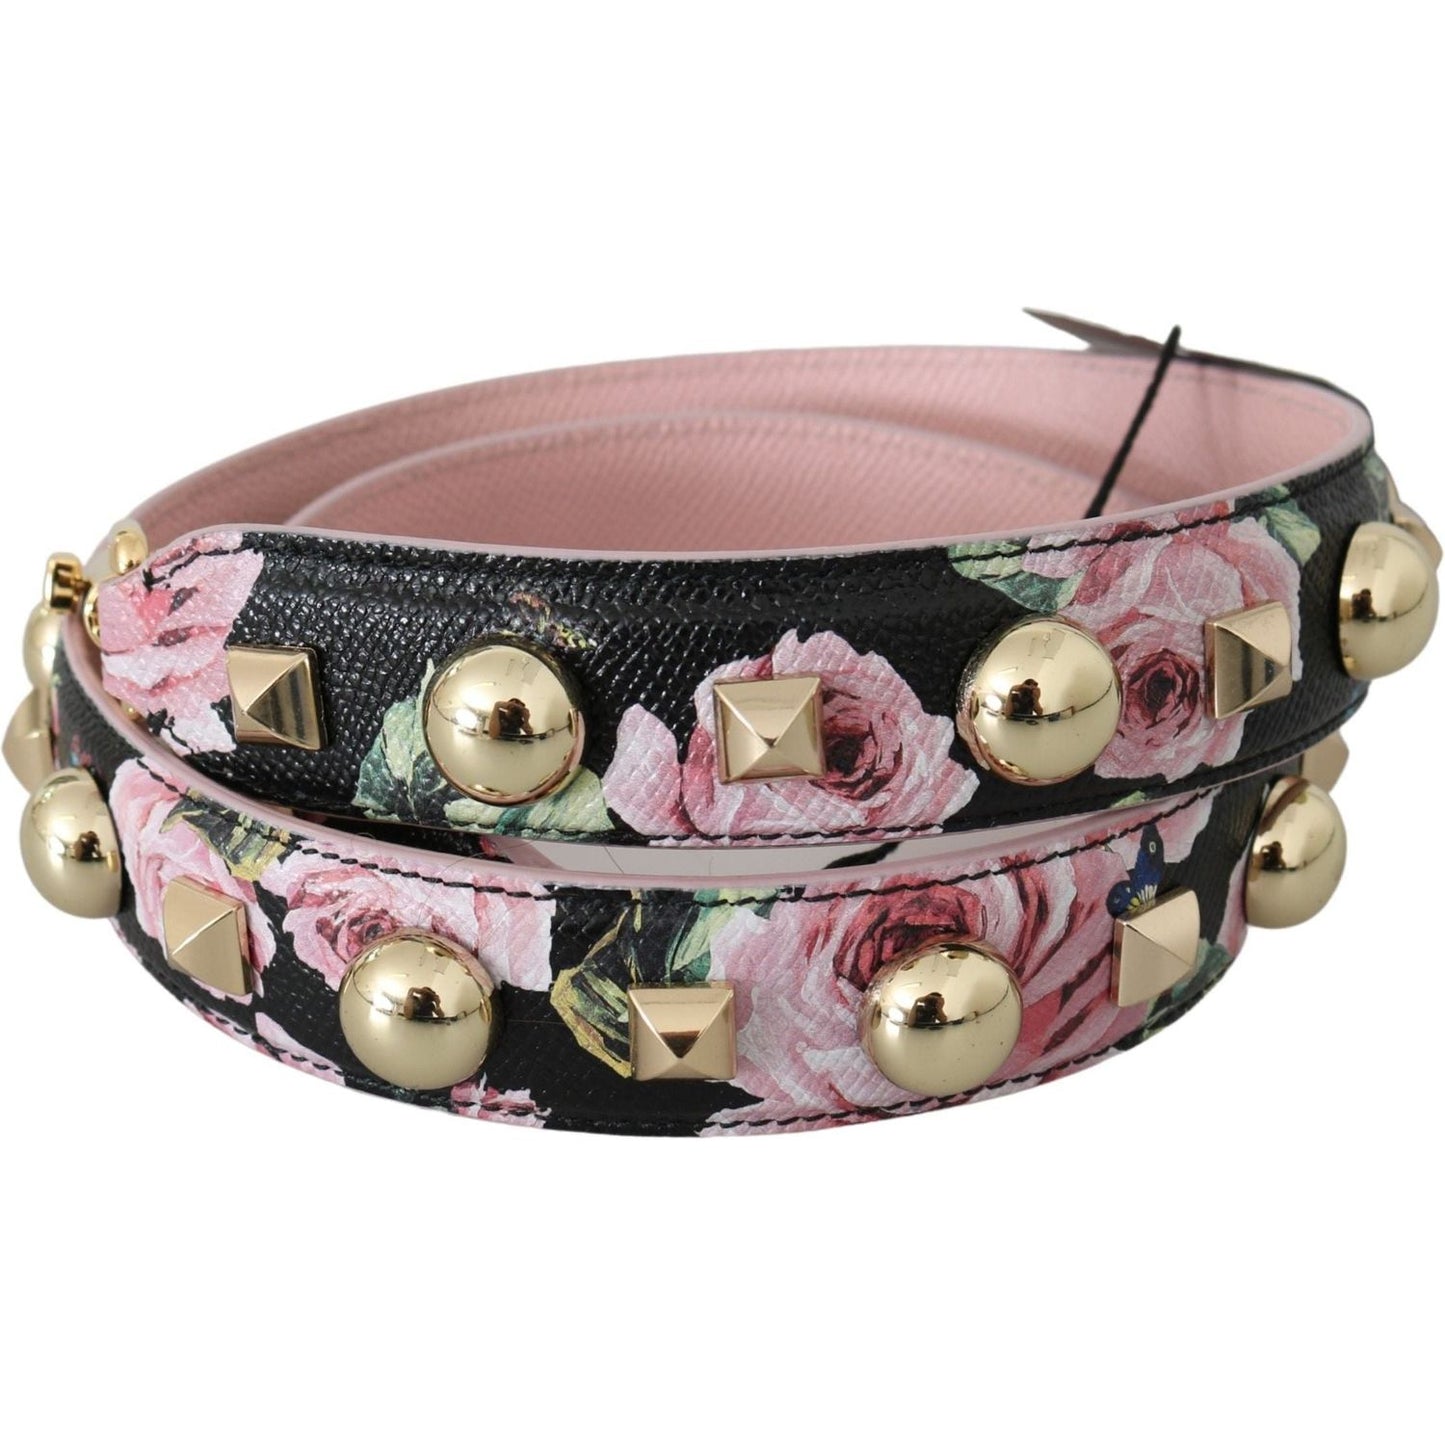 Dolce & Gabbana Elegant Floral Leather Shoulder Strap pink-floral-leather-stud-accessory-shoulder-strap